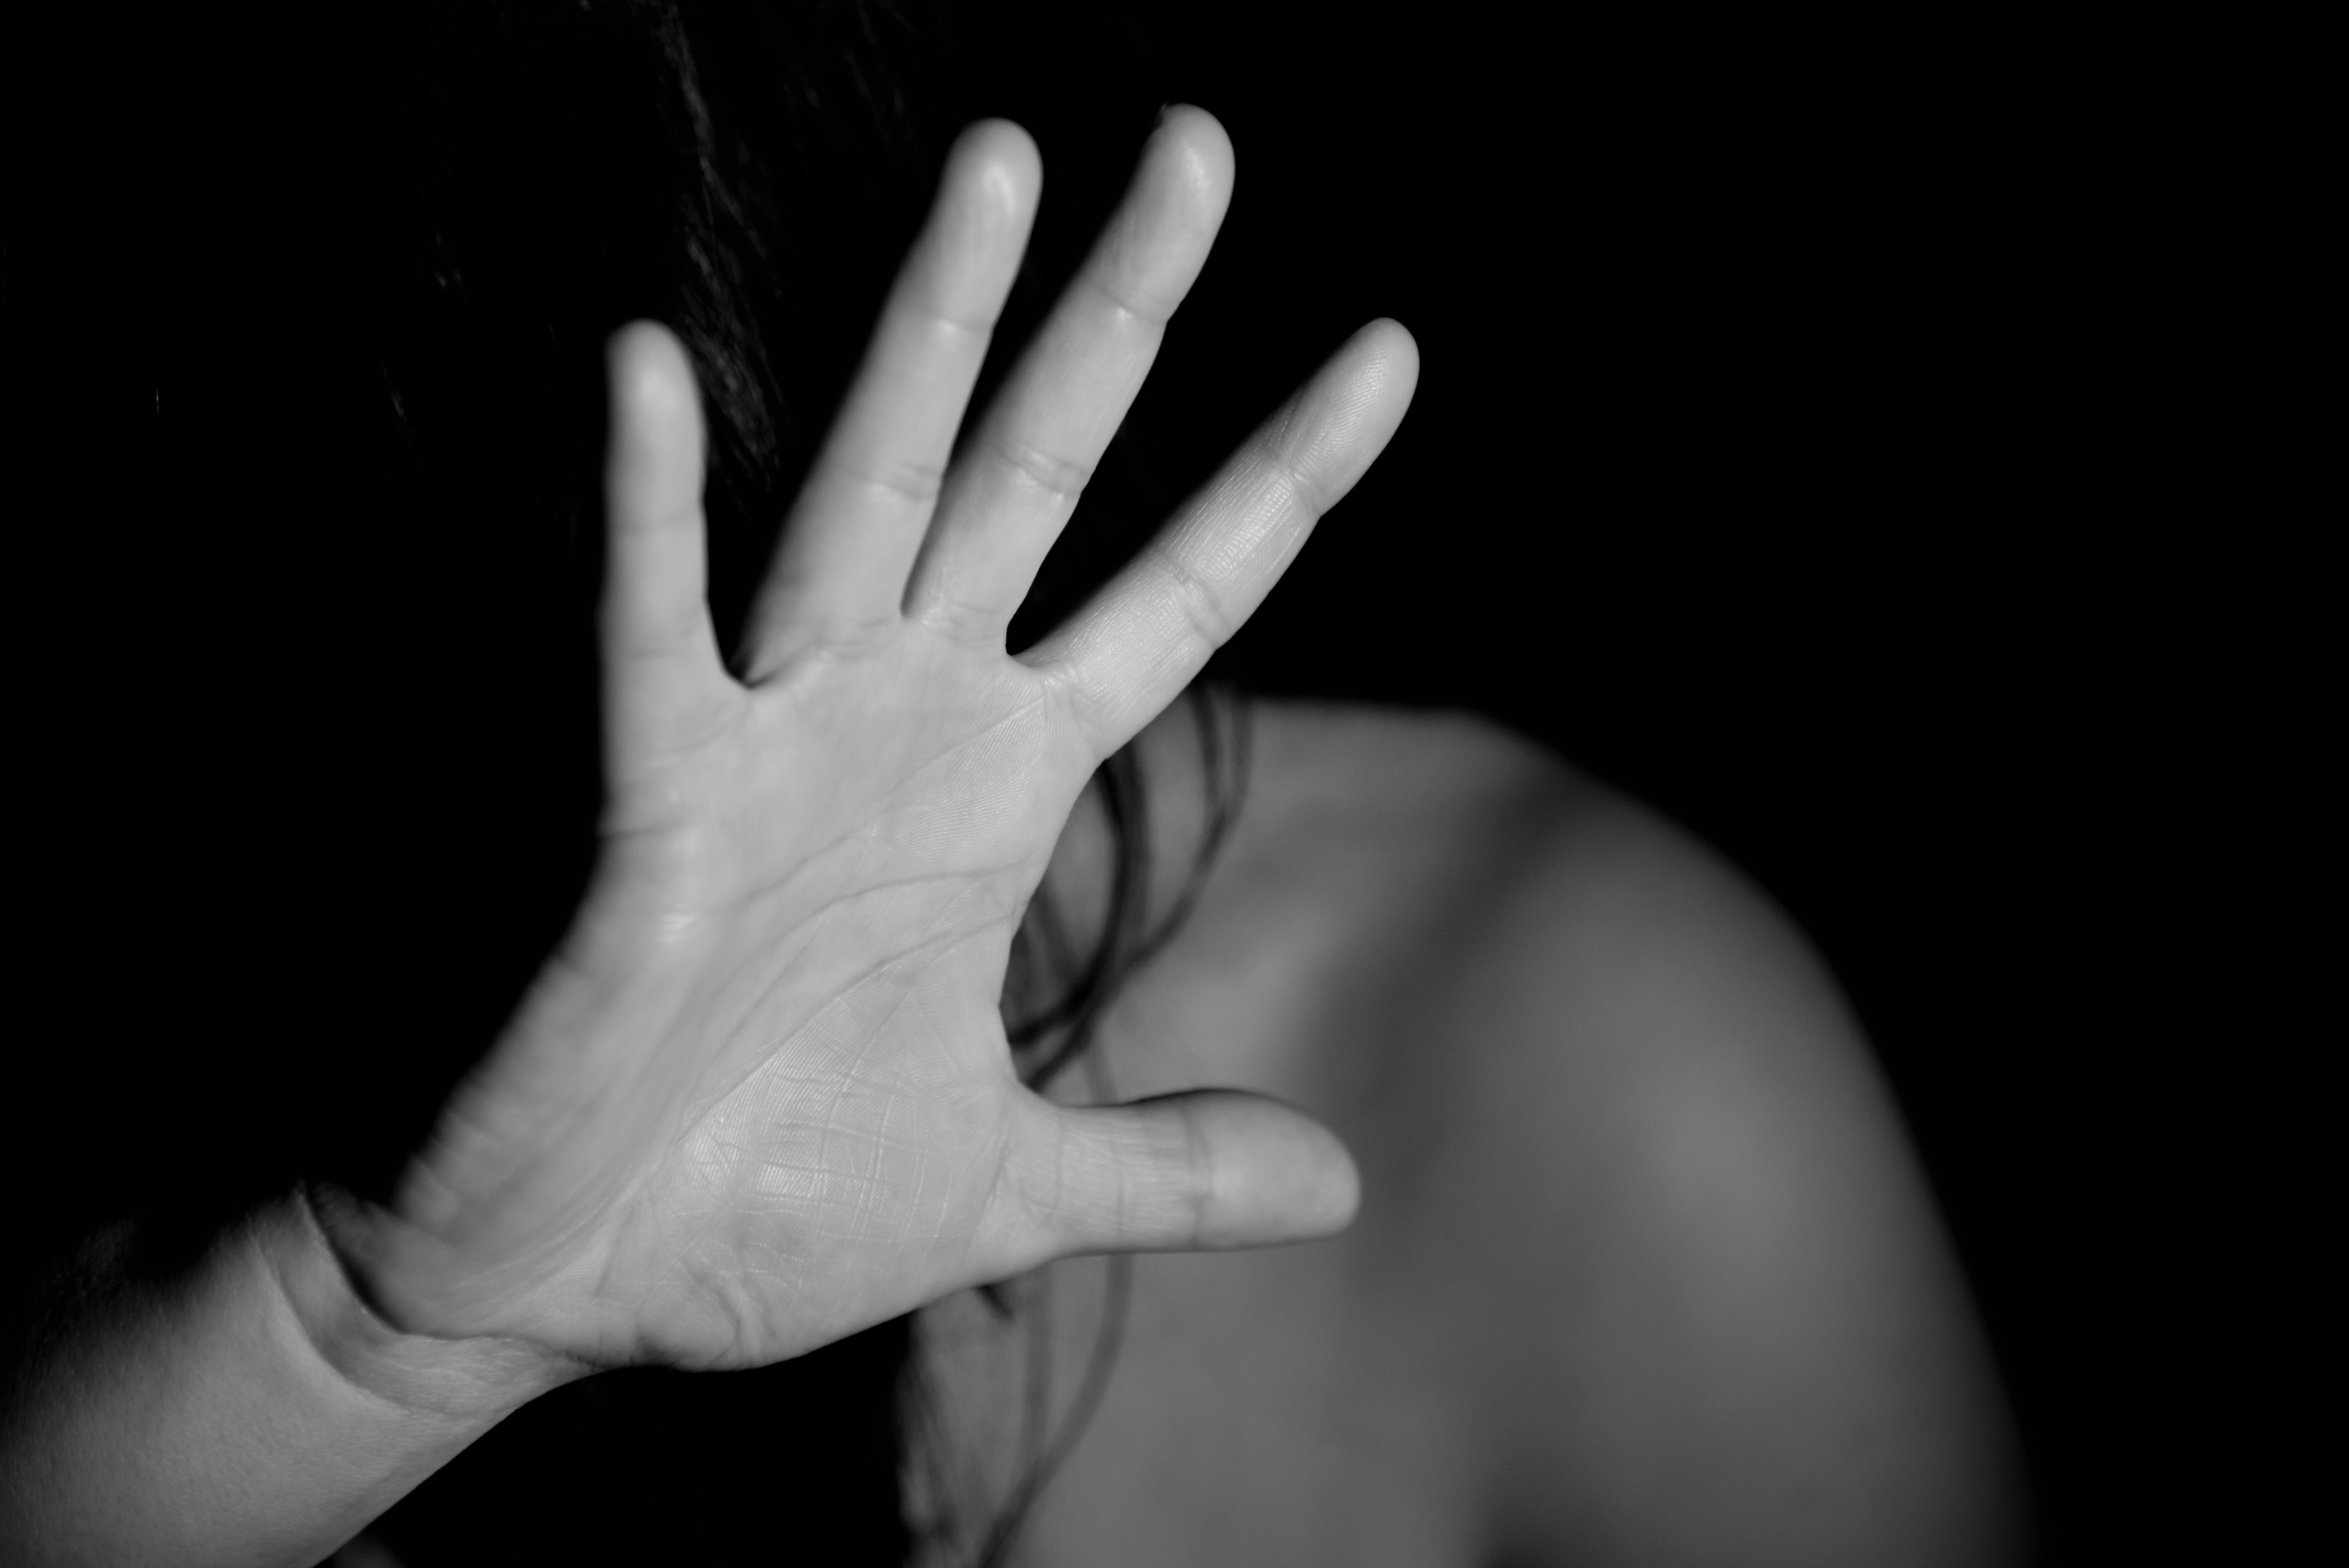 Robô do facebook passa a ajudar mulheres em situação de violência doméstica (Foto: Creative commons)